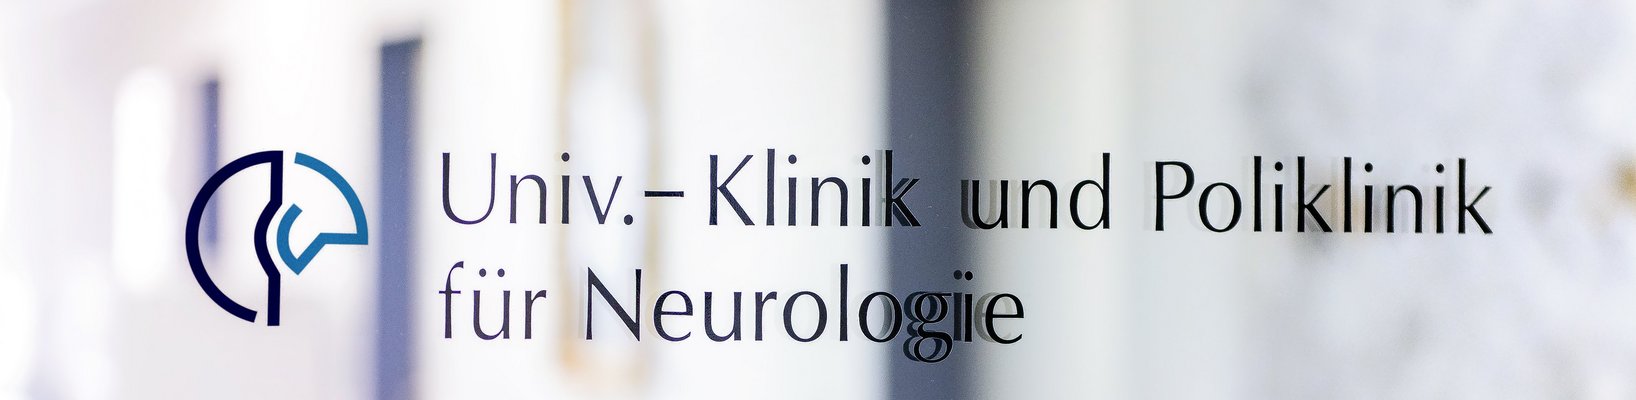 Eingangstür mit Schild zur Universitäts- und Poliklinik für Neurologie